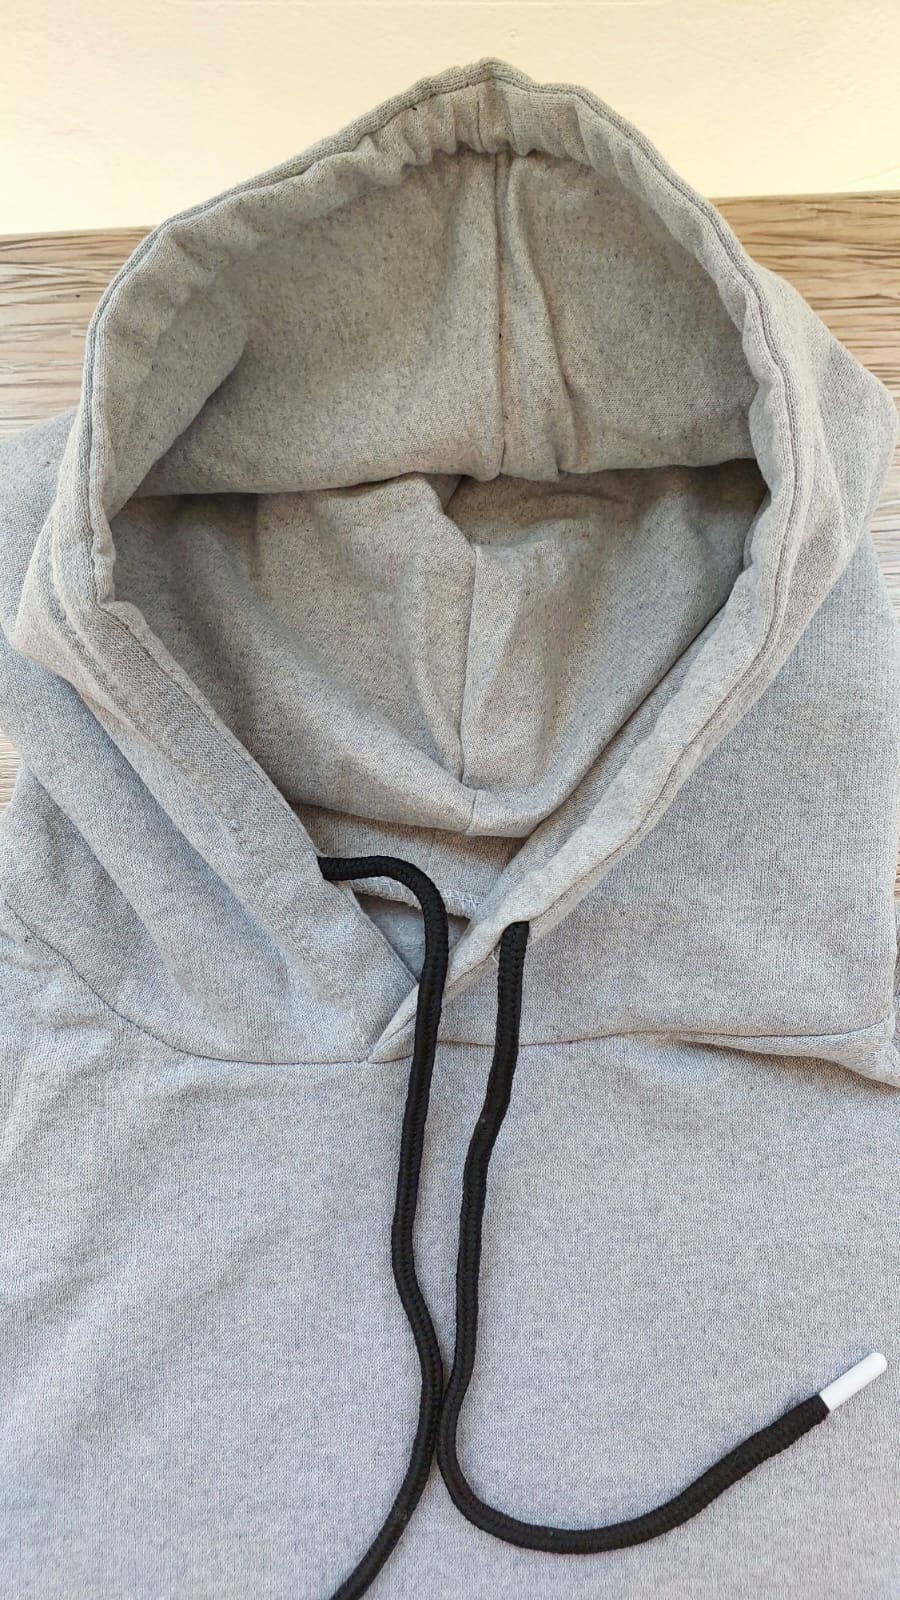 sweatshirt tasarla uygun fiyat yuvarlak yaka iki iplik 10